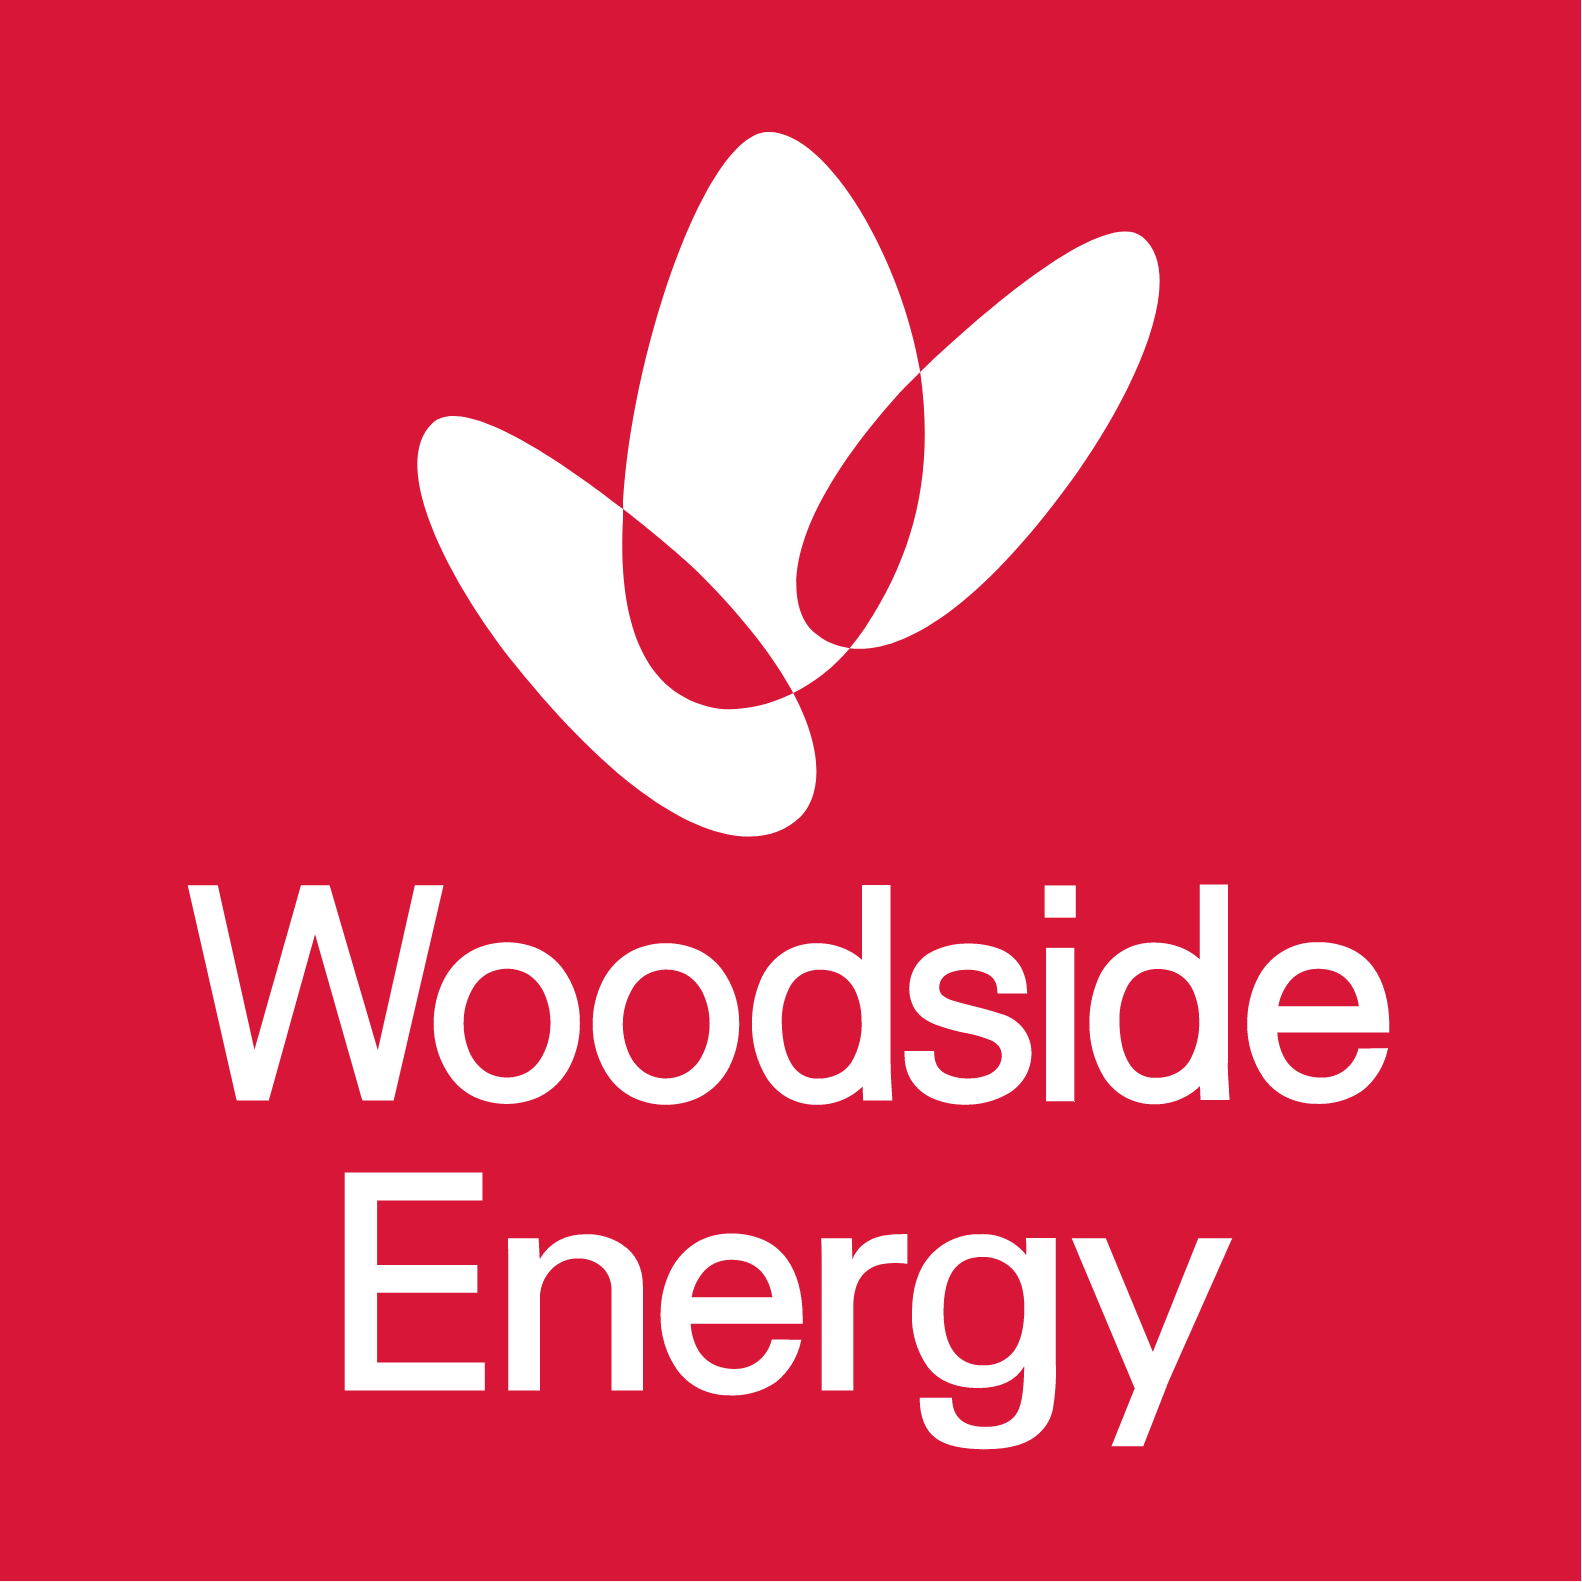 Woodside Energy logo large (transparent PNG)